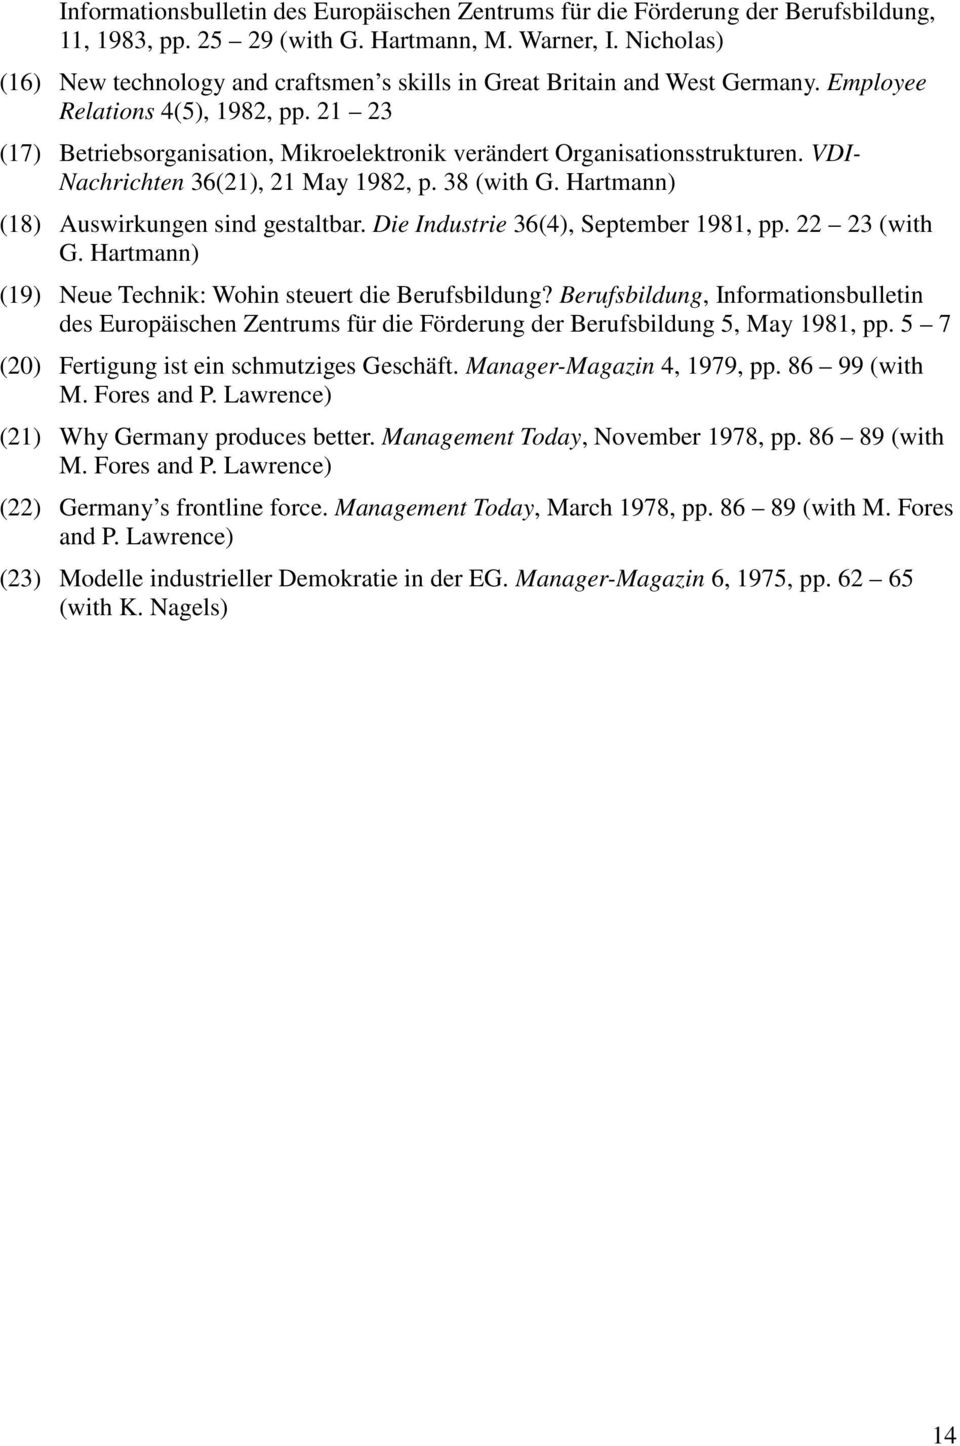 21 23 (17) Betriebsorganisation, Mikroelektronik verändert Organisationsstrukturen. VDI- Nachrichten 36(21), 21 May 1982, p. 38 (with G. Hartmann) (18) Auswirkungen sind gestaltbar.